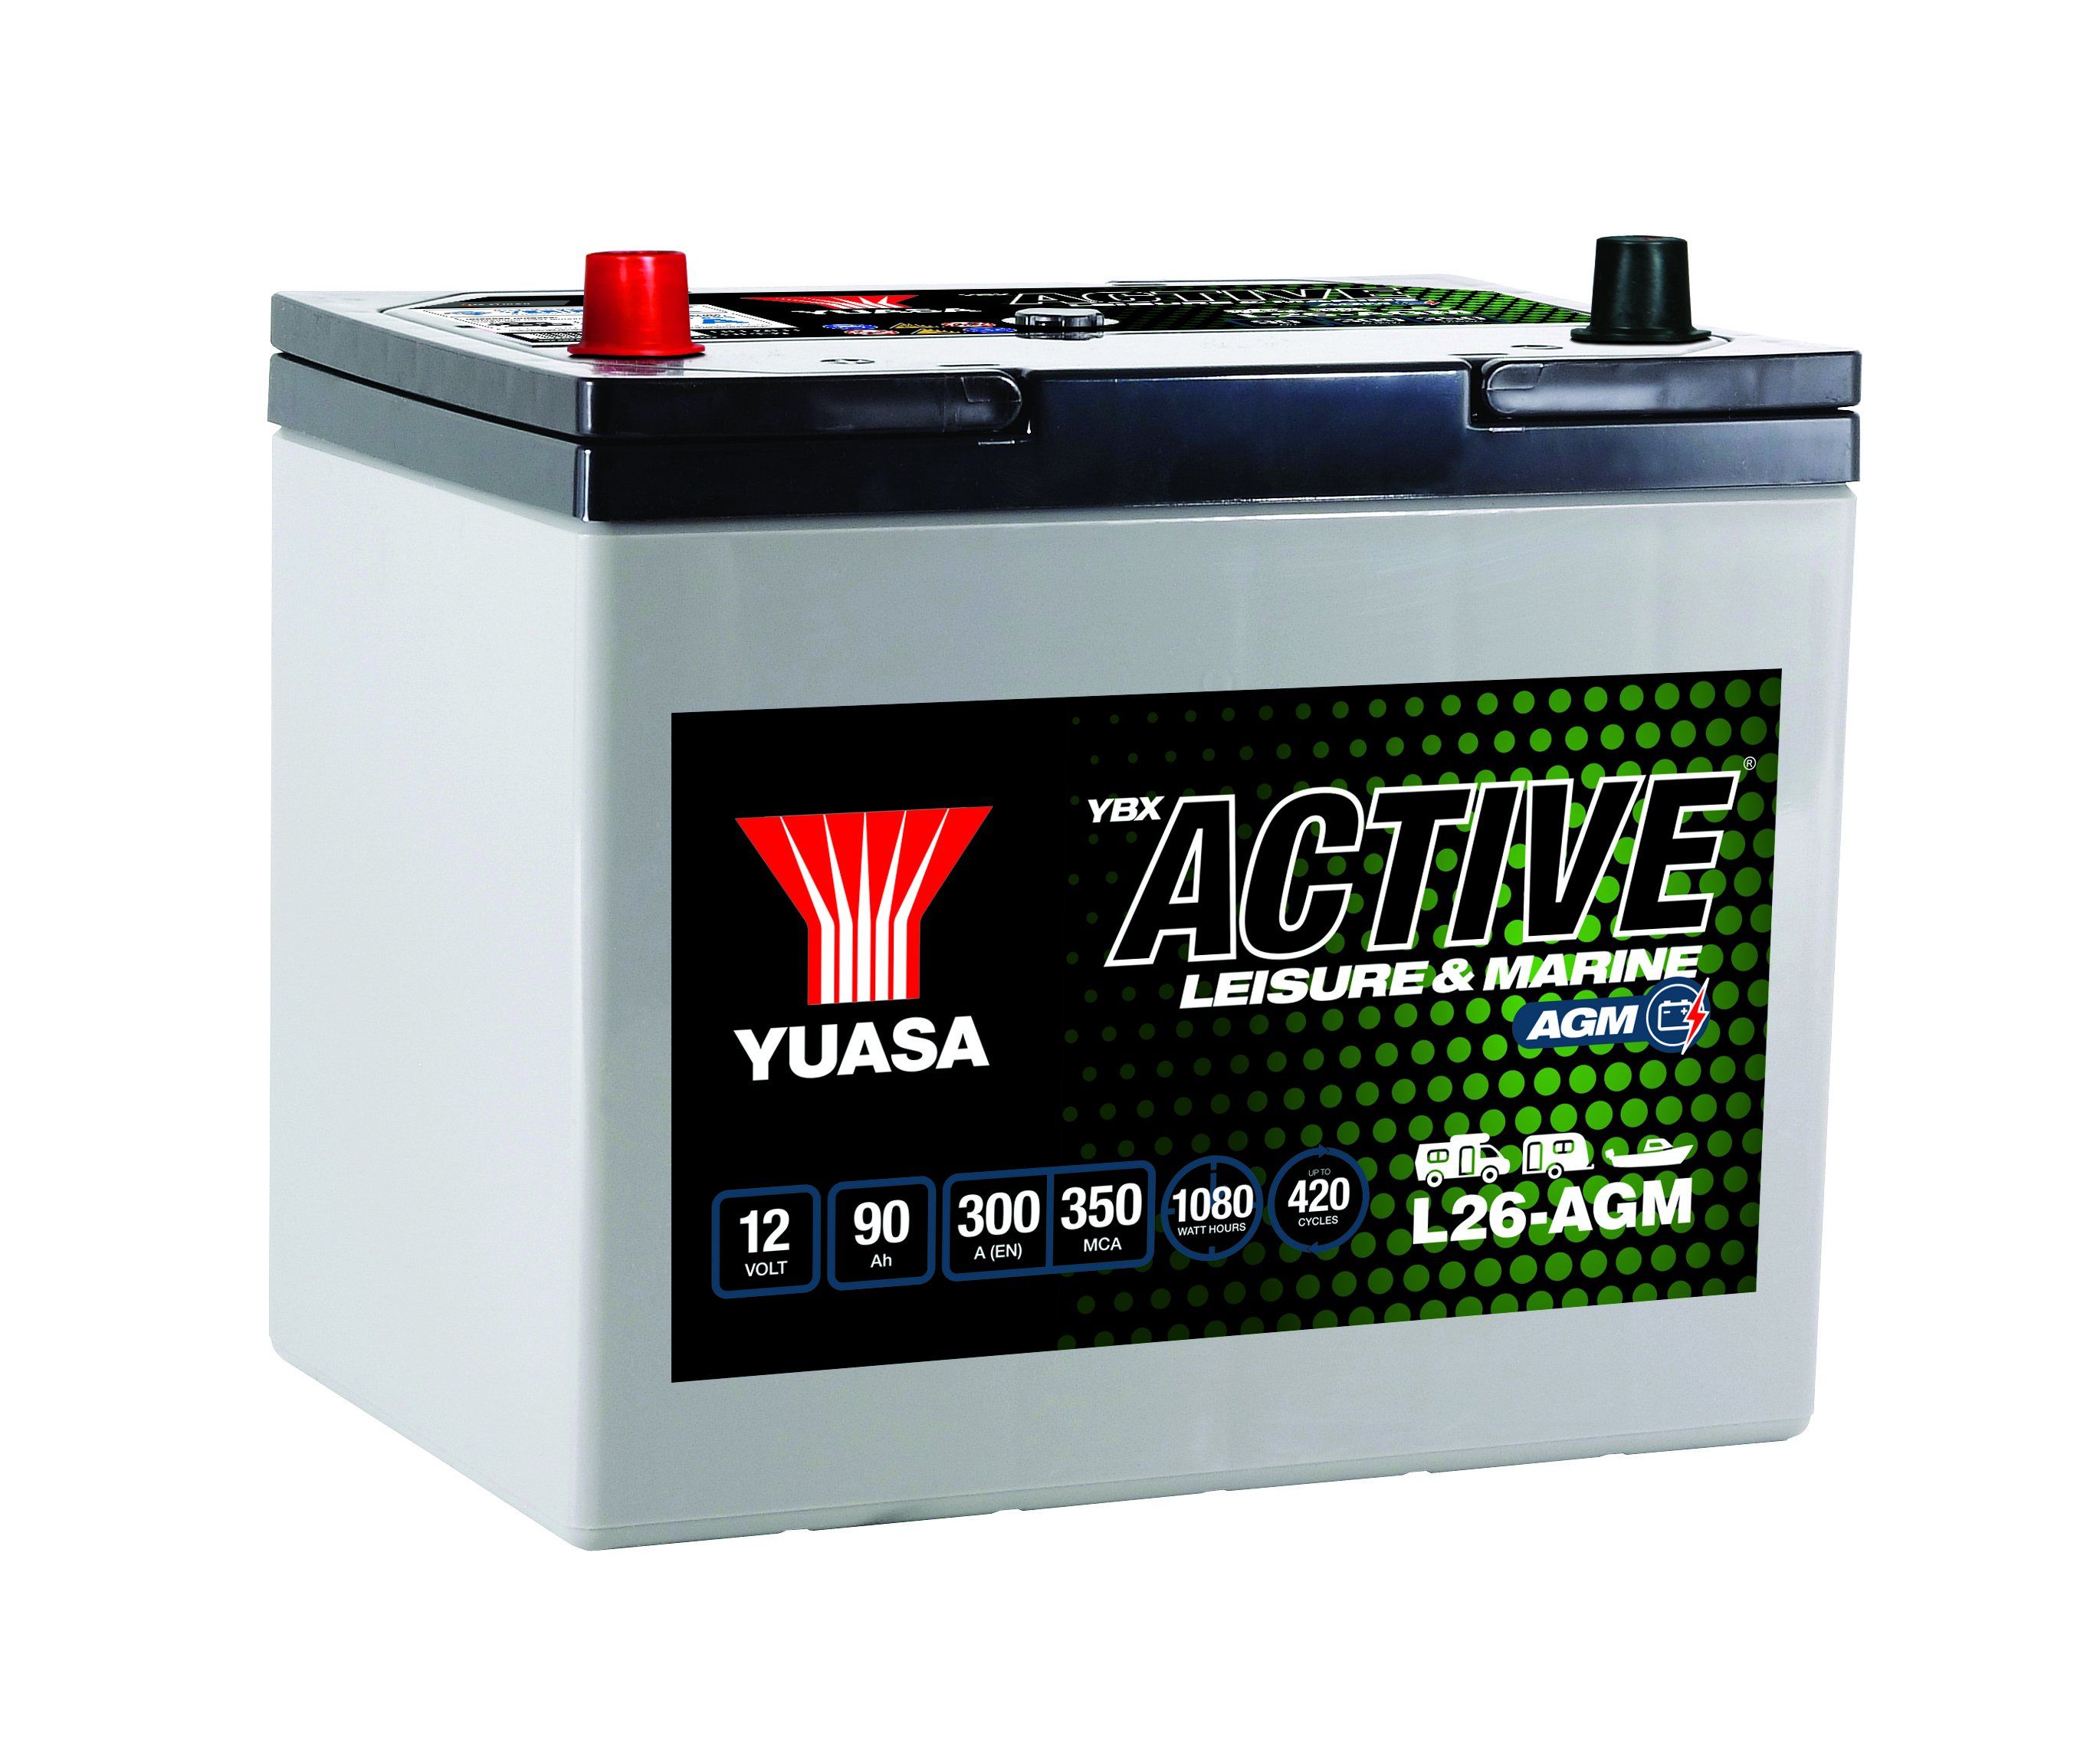 L26-Agm Yuasa Active Leisure Agm Battery 12V 90Ah 300A